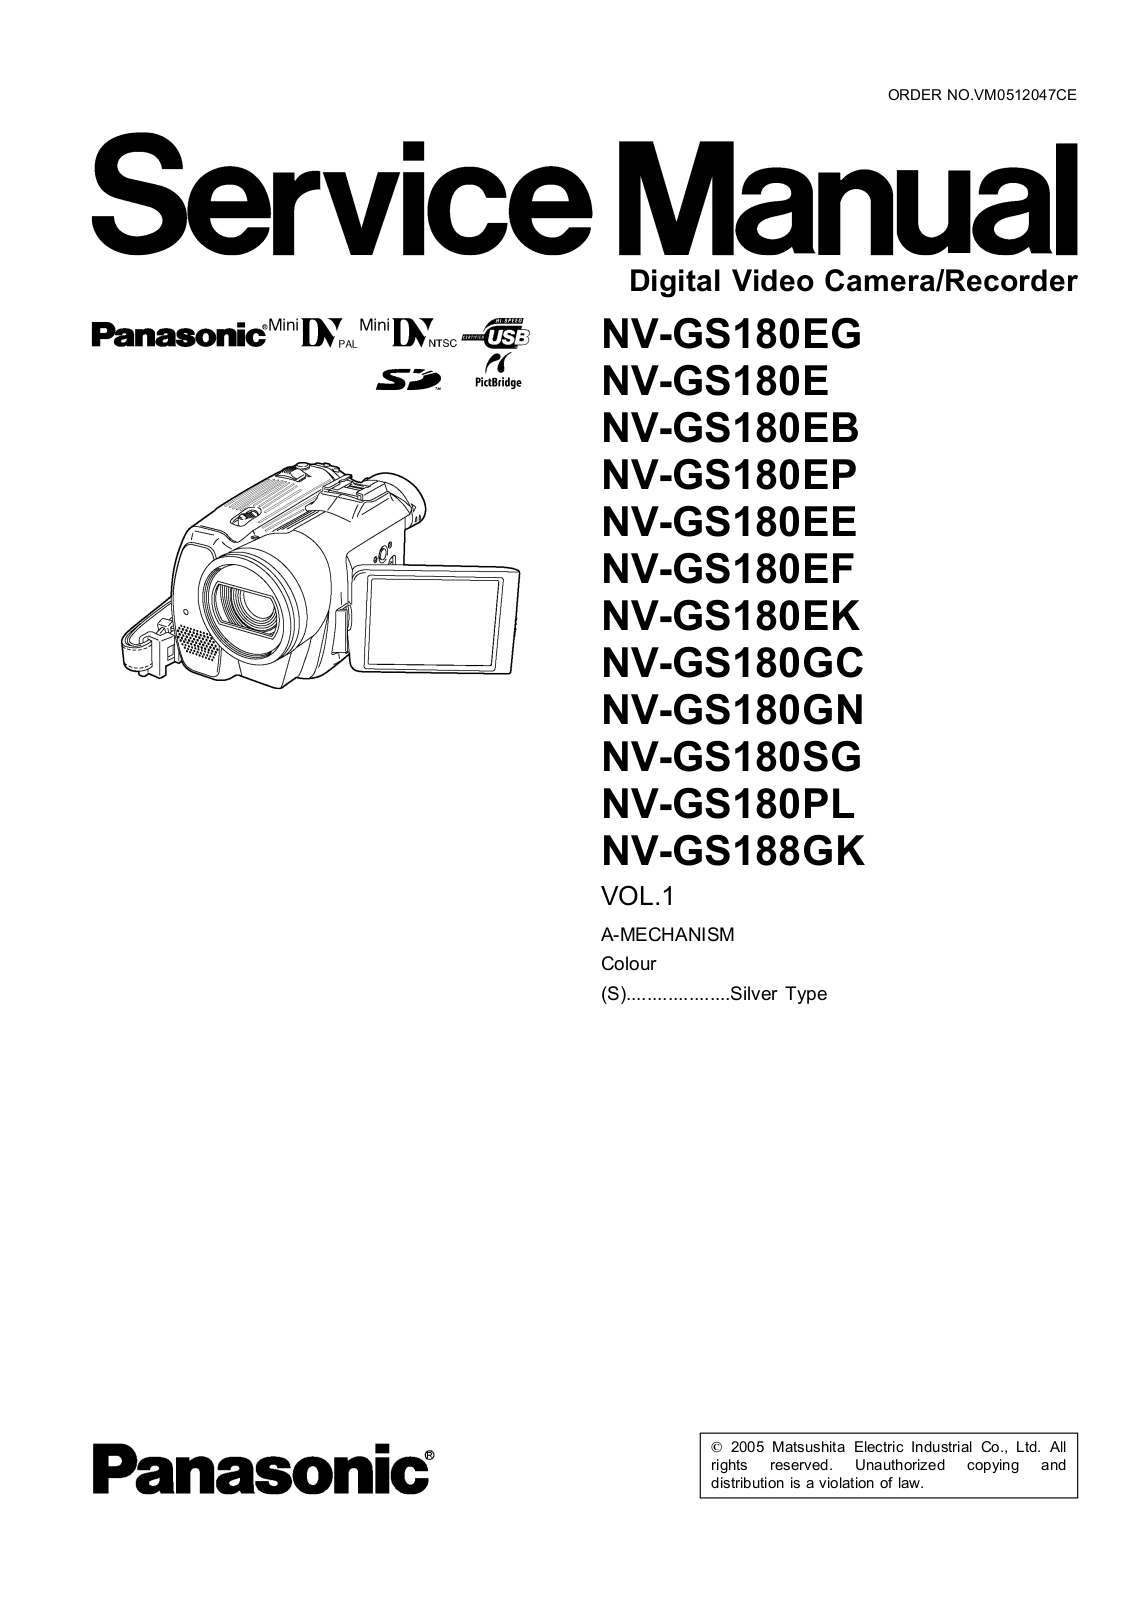 Panasonic NV-GS188GK, NV-GS180PL, NV-GS180SG, NV-GS180GN, NV-GS180GC Service Manual